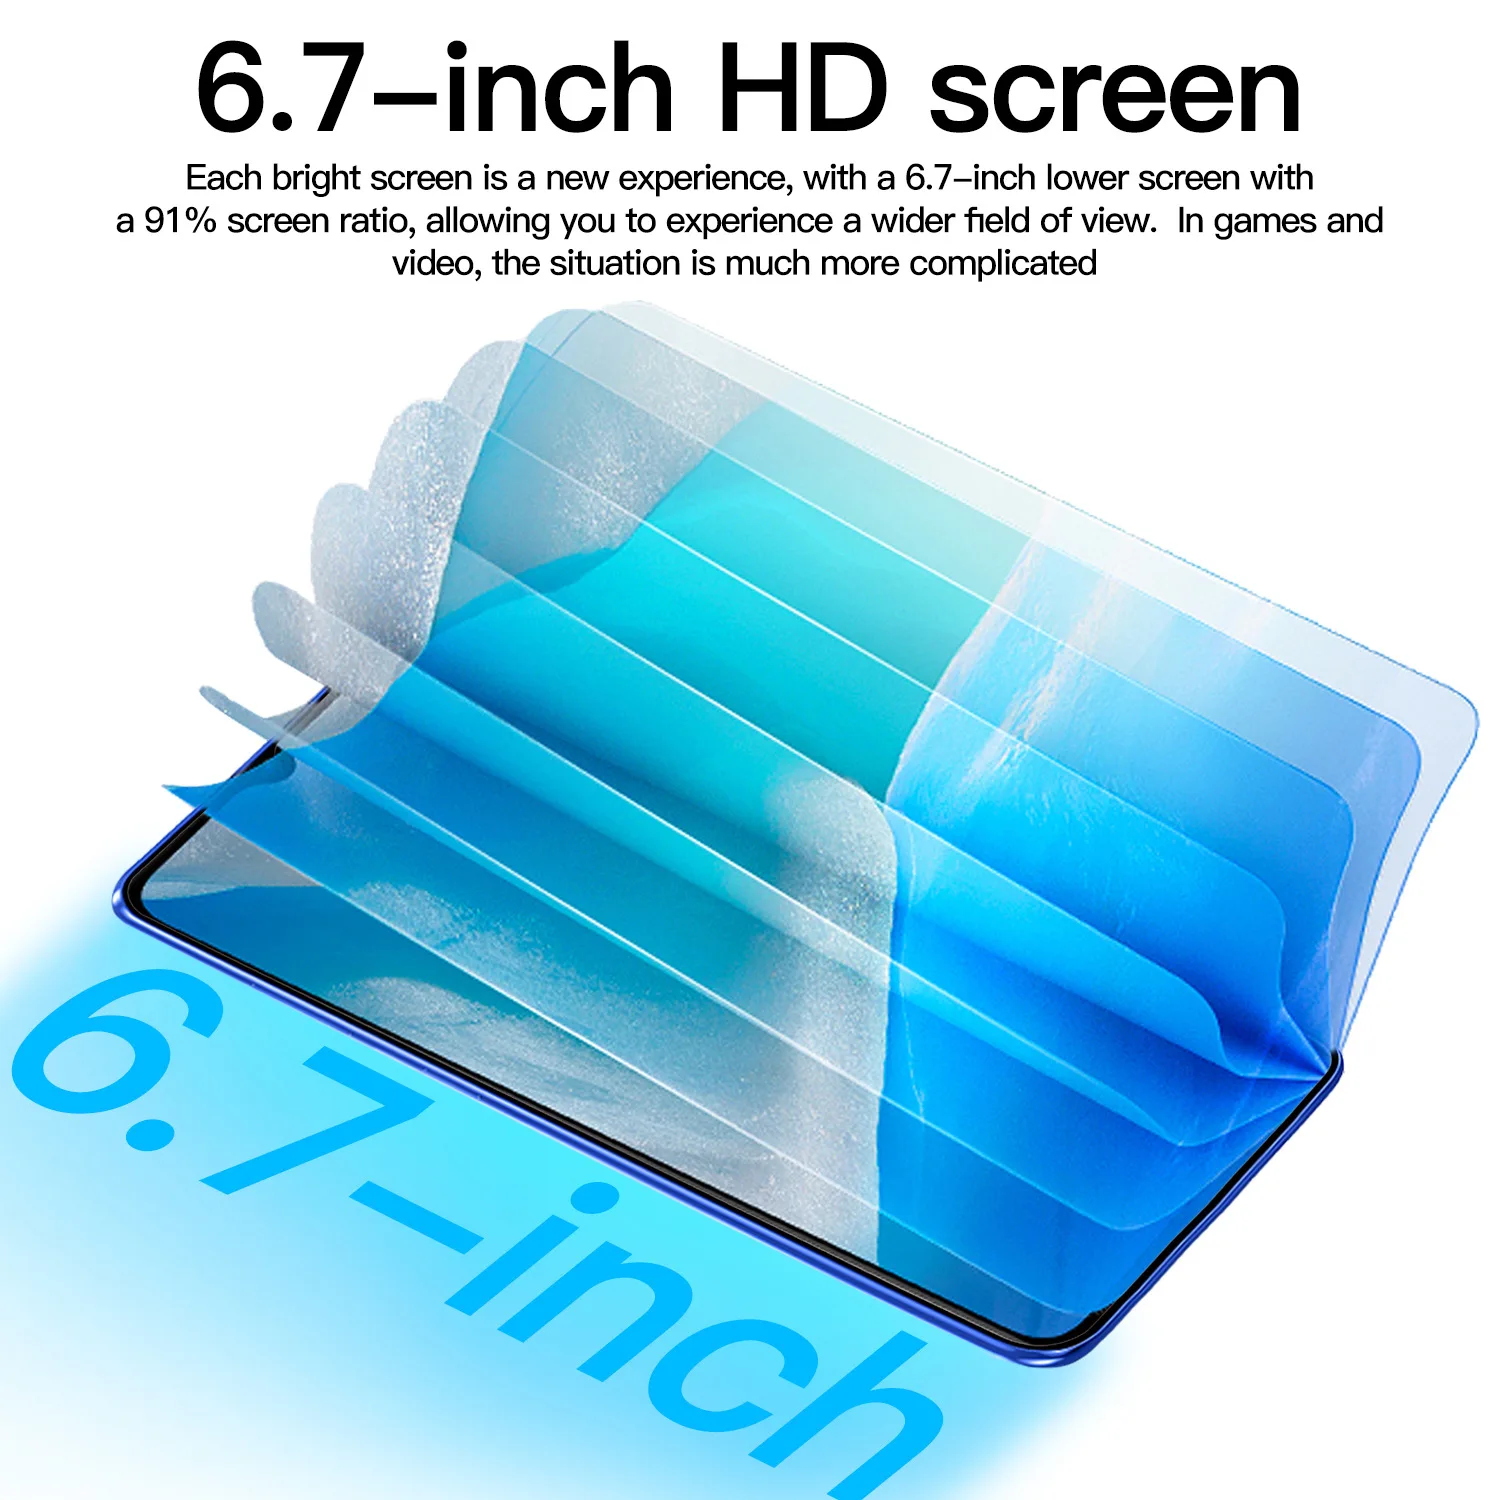 S22 Ultra 6.7 inch Full Screen5G | 2mrk Sale Online